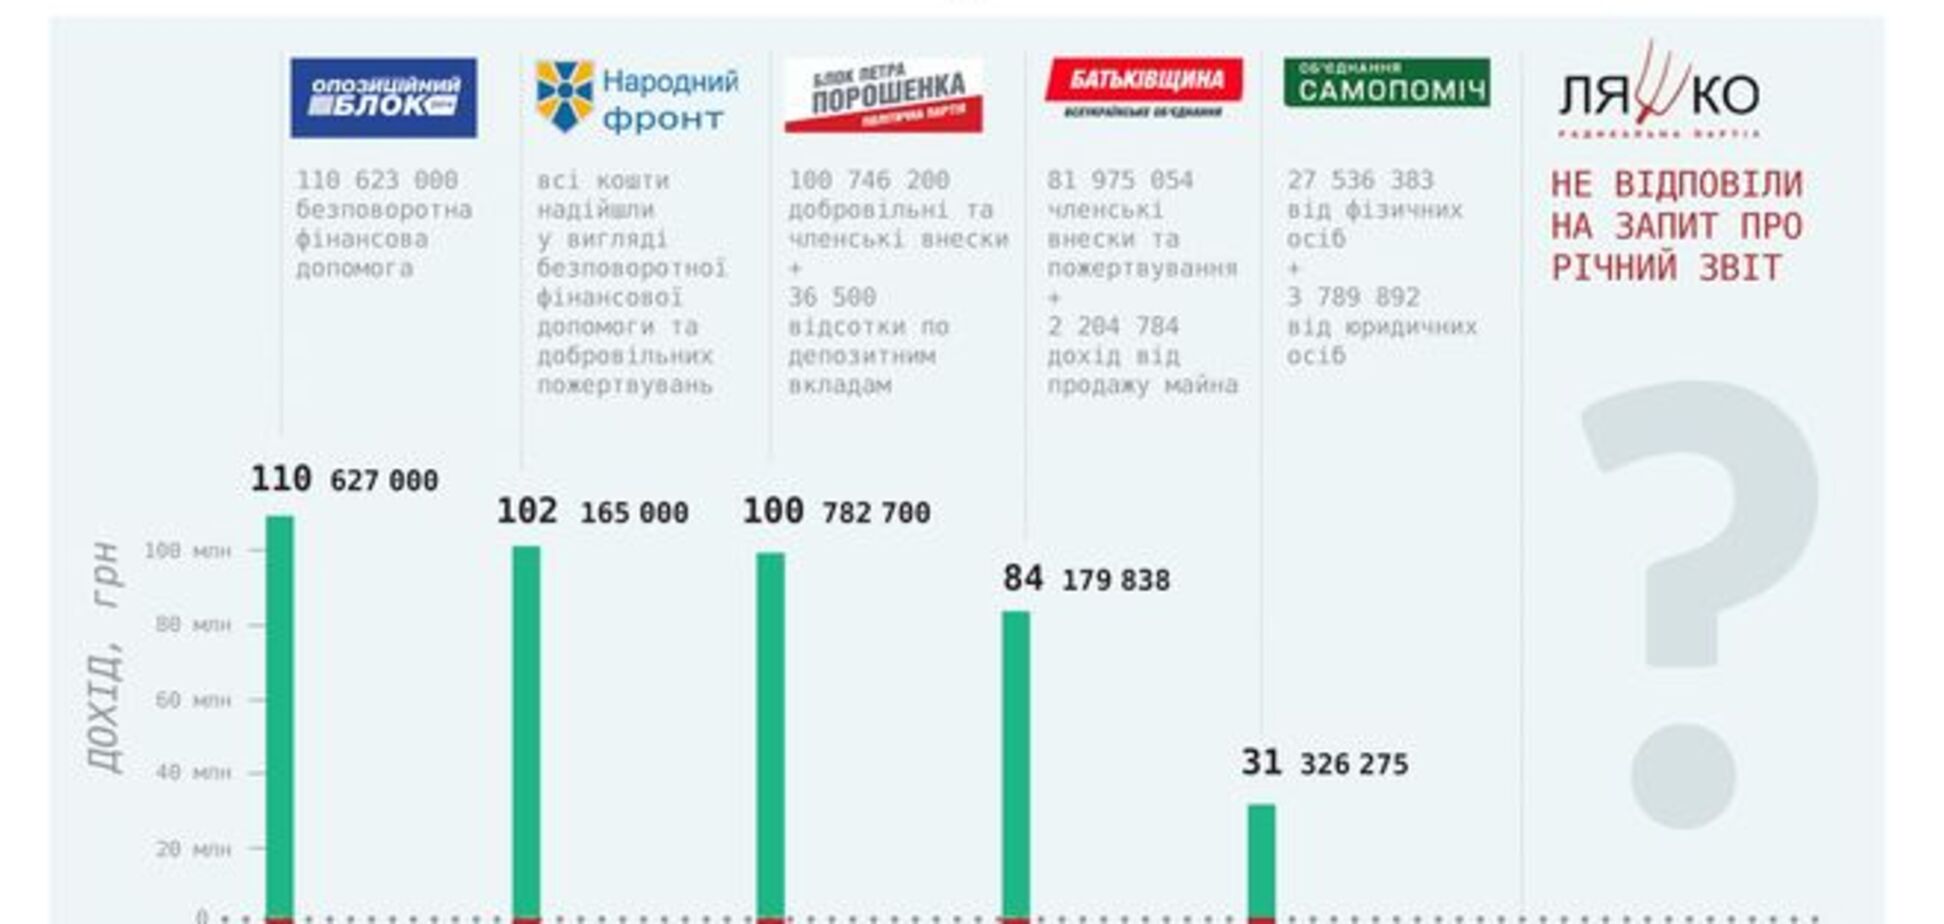 Партия Порошенко беднее партии Яценюка: инфографика 